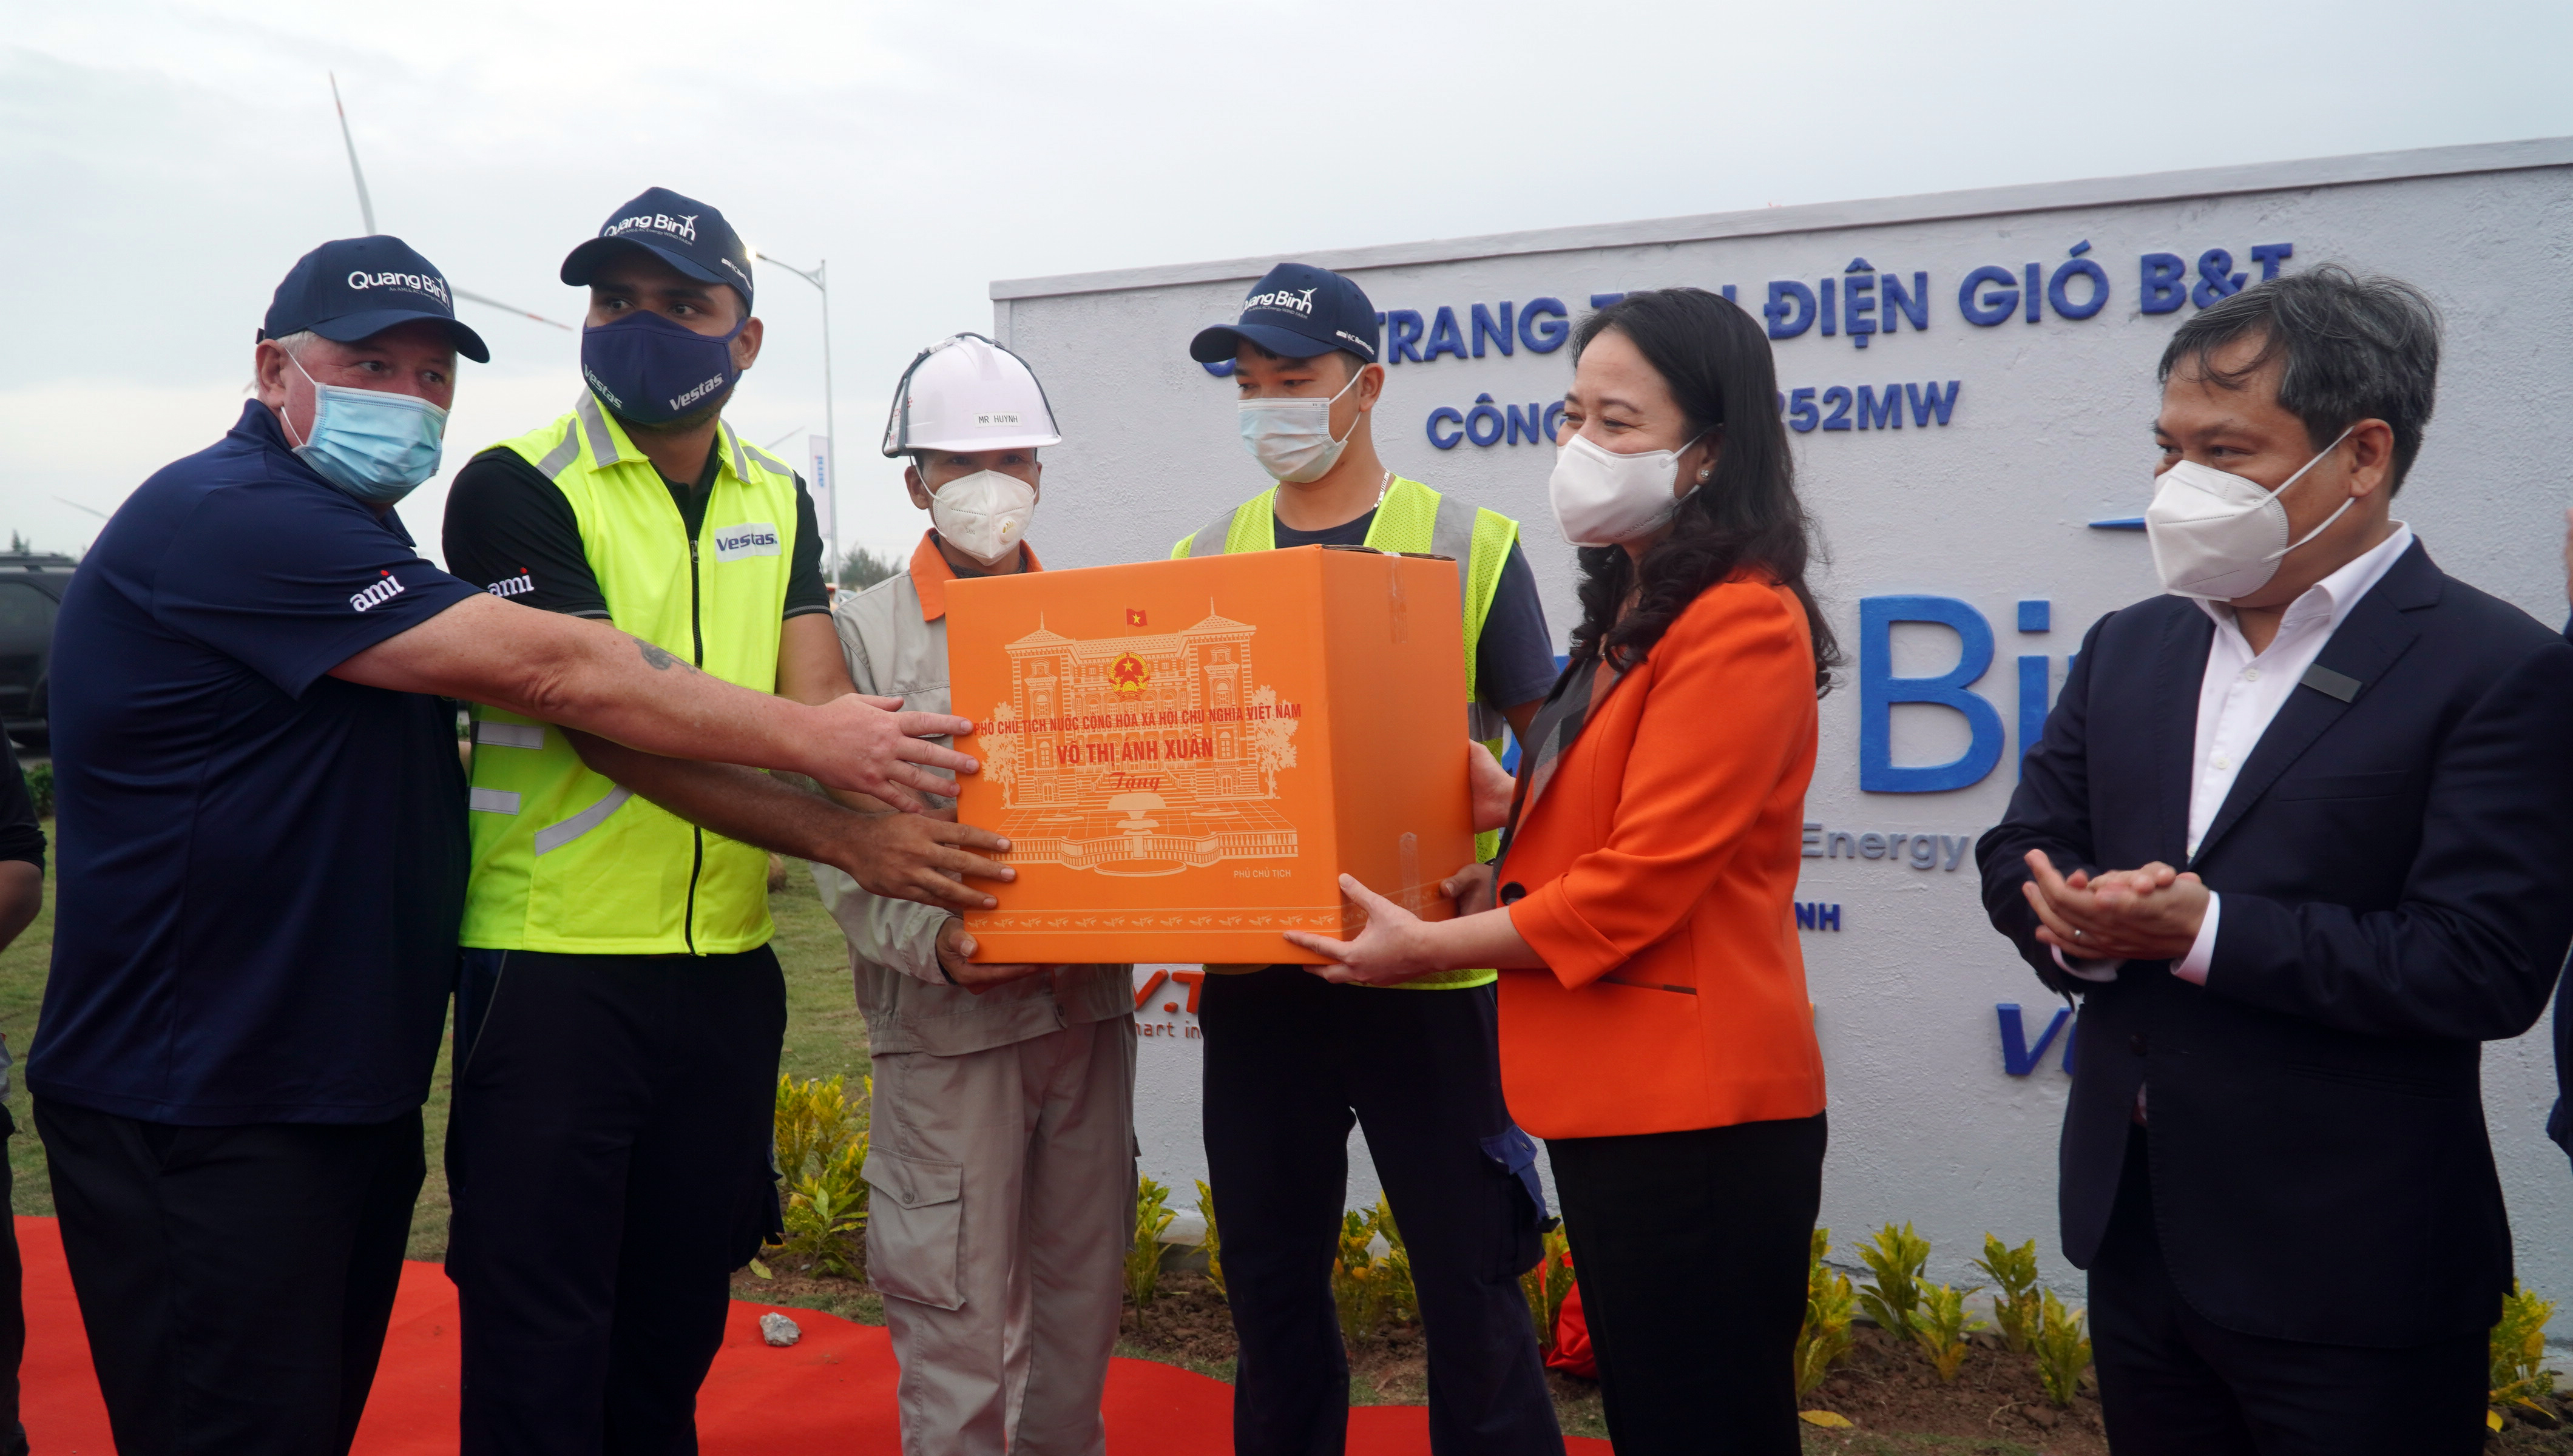 Đồng chí Phó Chủ tịch nước Võ Thị Ánh Xuân tặng qùa cán bộ, công nhân Cụm trang trại điện gió B&T.  